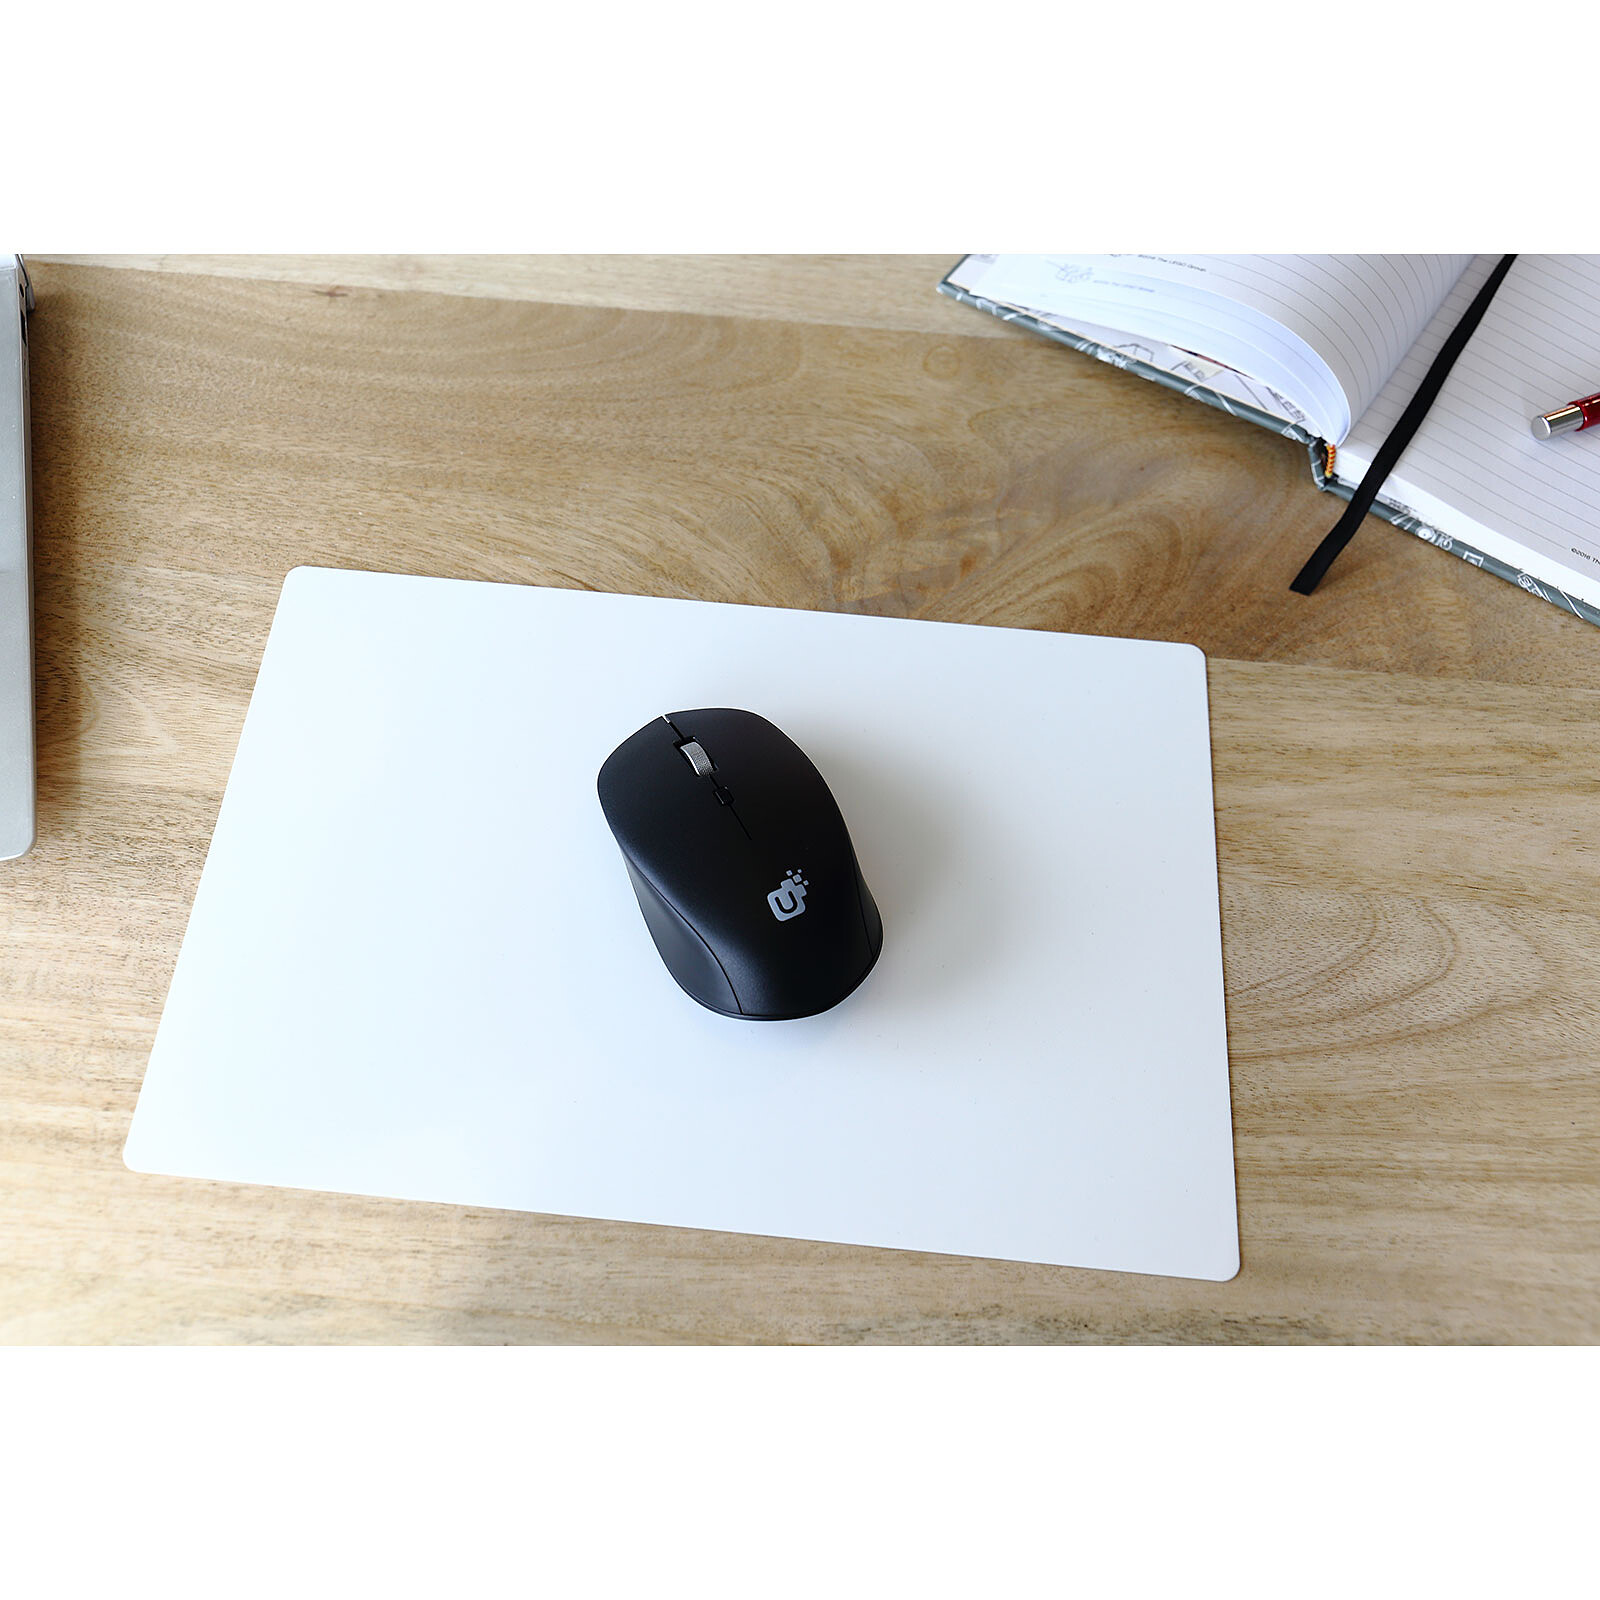 Logitech Mouse Pad Studio Series (Graphite) - Tapis de souris - Garantie 3  ans LDLC